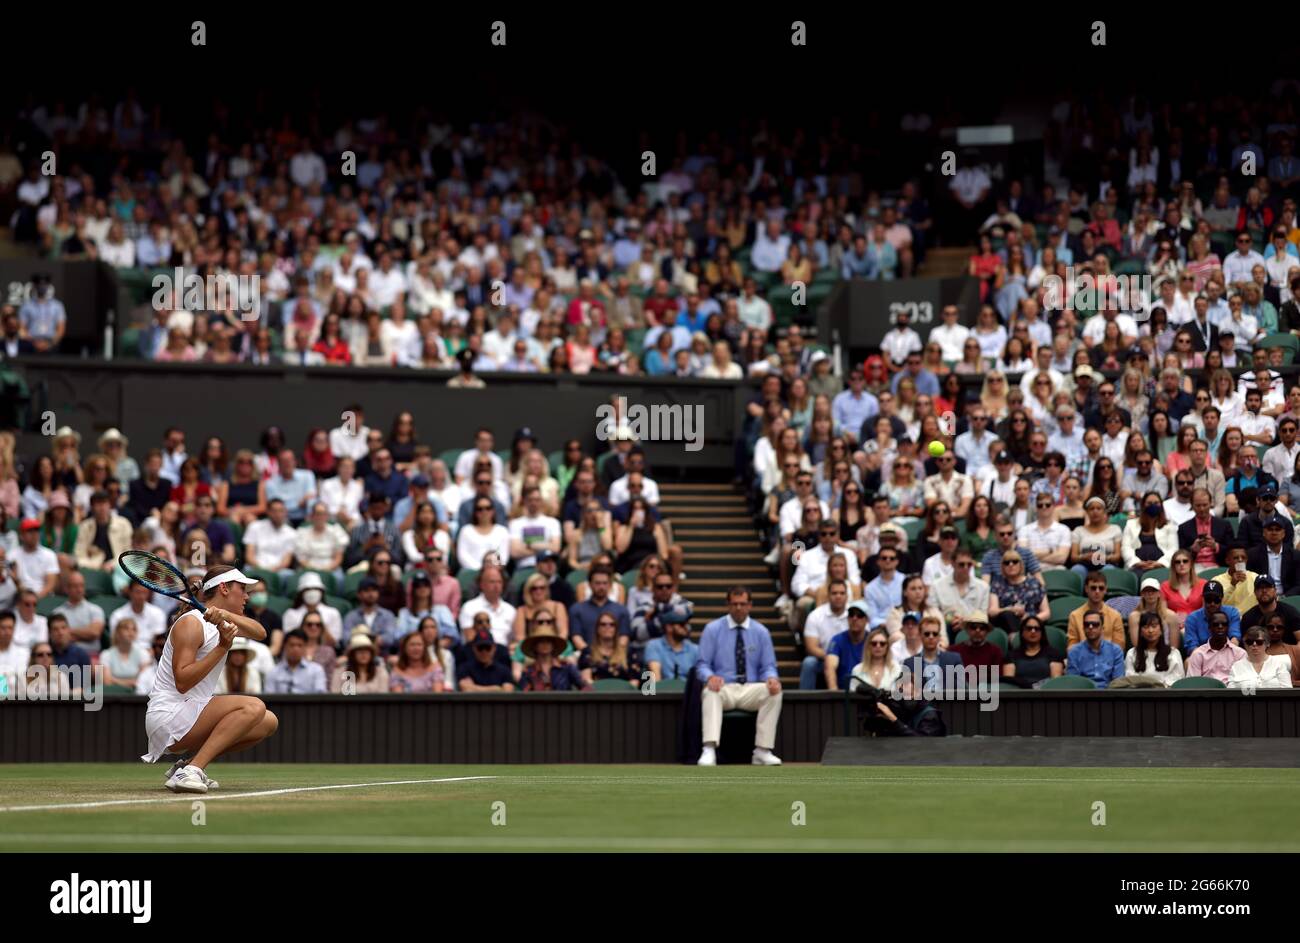 Kaja Juvan in Aktion während ihres Matches in der dritten Runde der Damen gegen Coco Gauff am sechsten Tag von Wimbledon im All England Lawn Tennis and Croquet Club in Wimbledon. Bilddatum: Samstag, 3. Juli 2021. Stockfoto